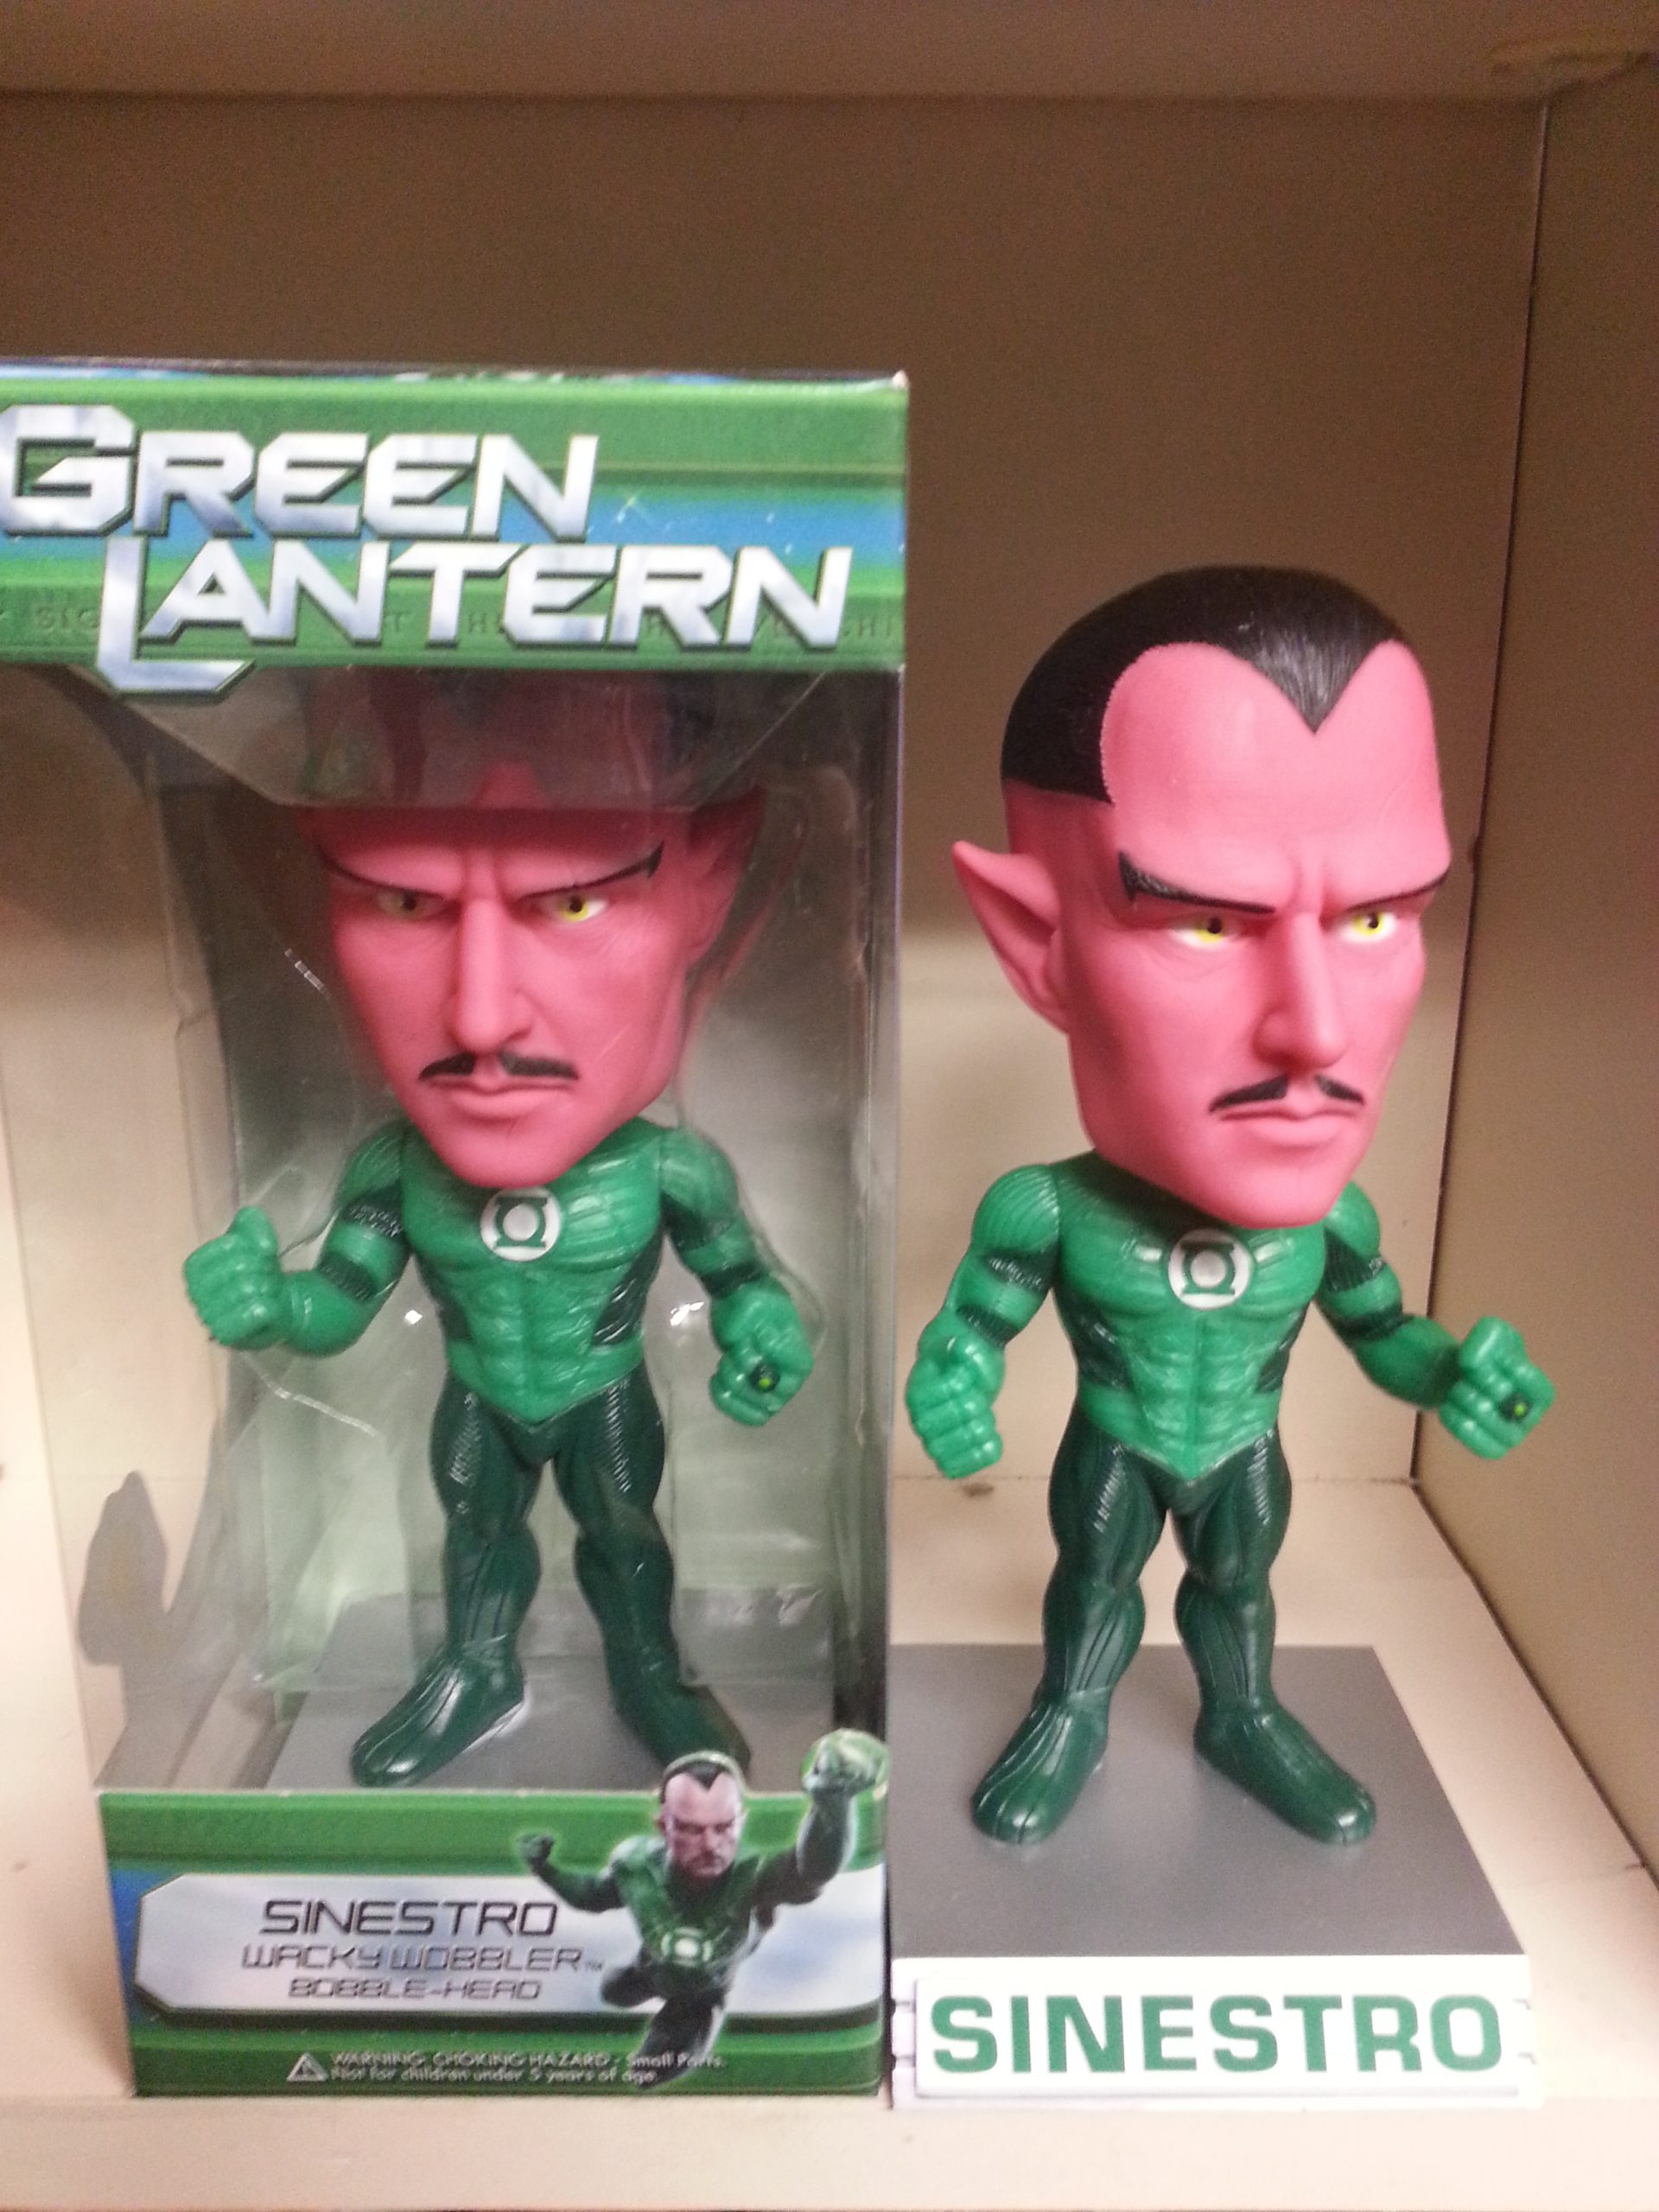 NEW in Box by Funko Green Lantern Sinestro Wacky Wobbler